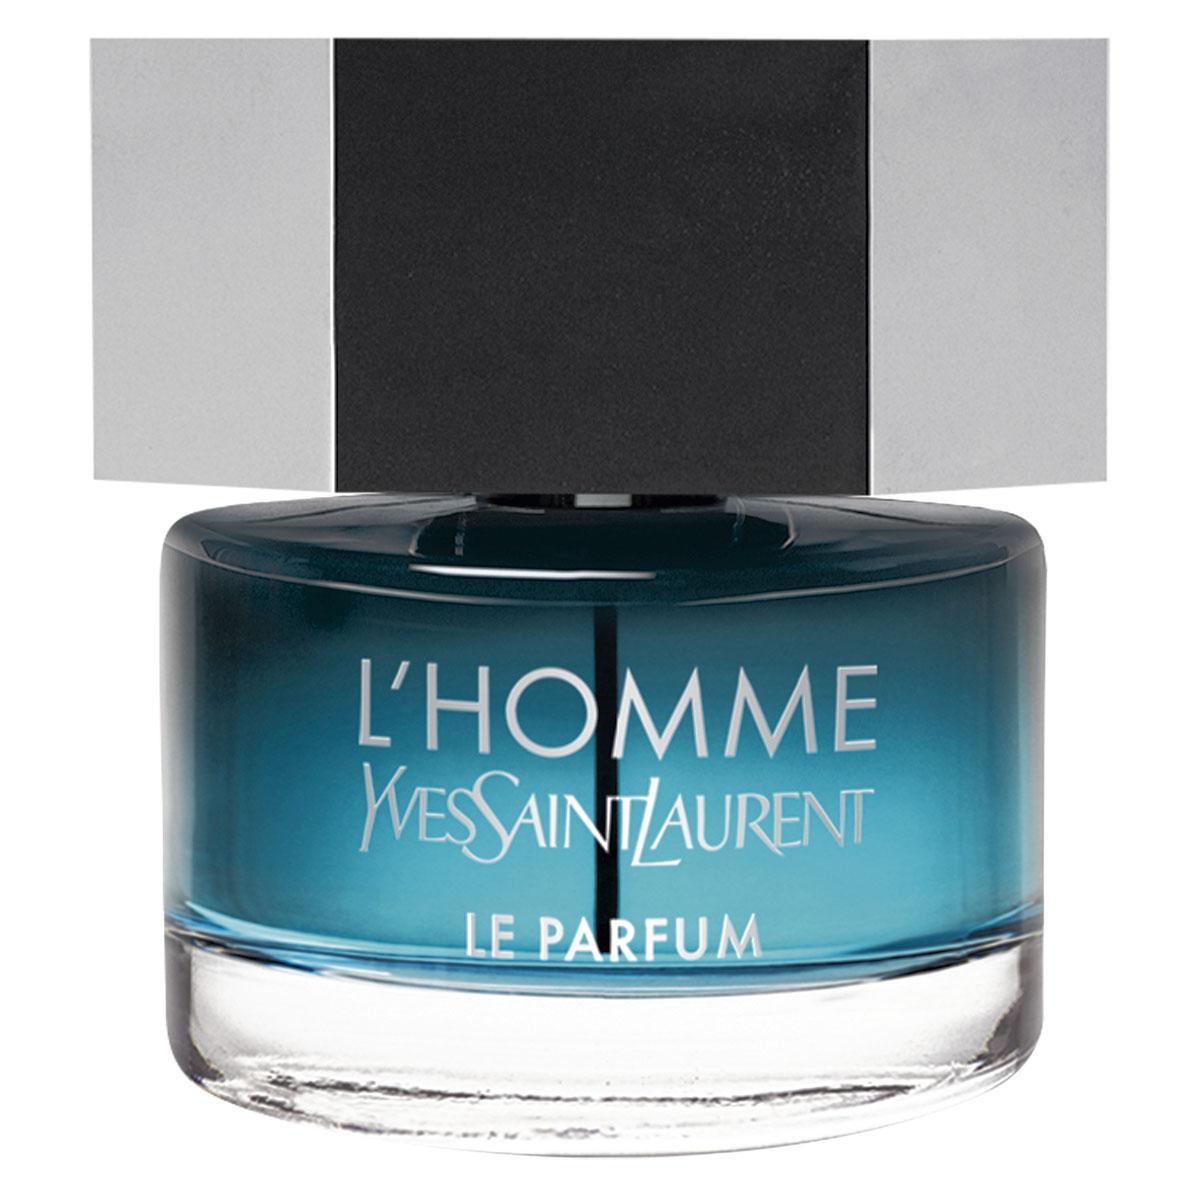 L'Homme, Yves Saint Laurent, 70 euro voor 40 ml.